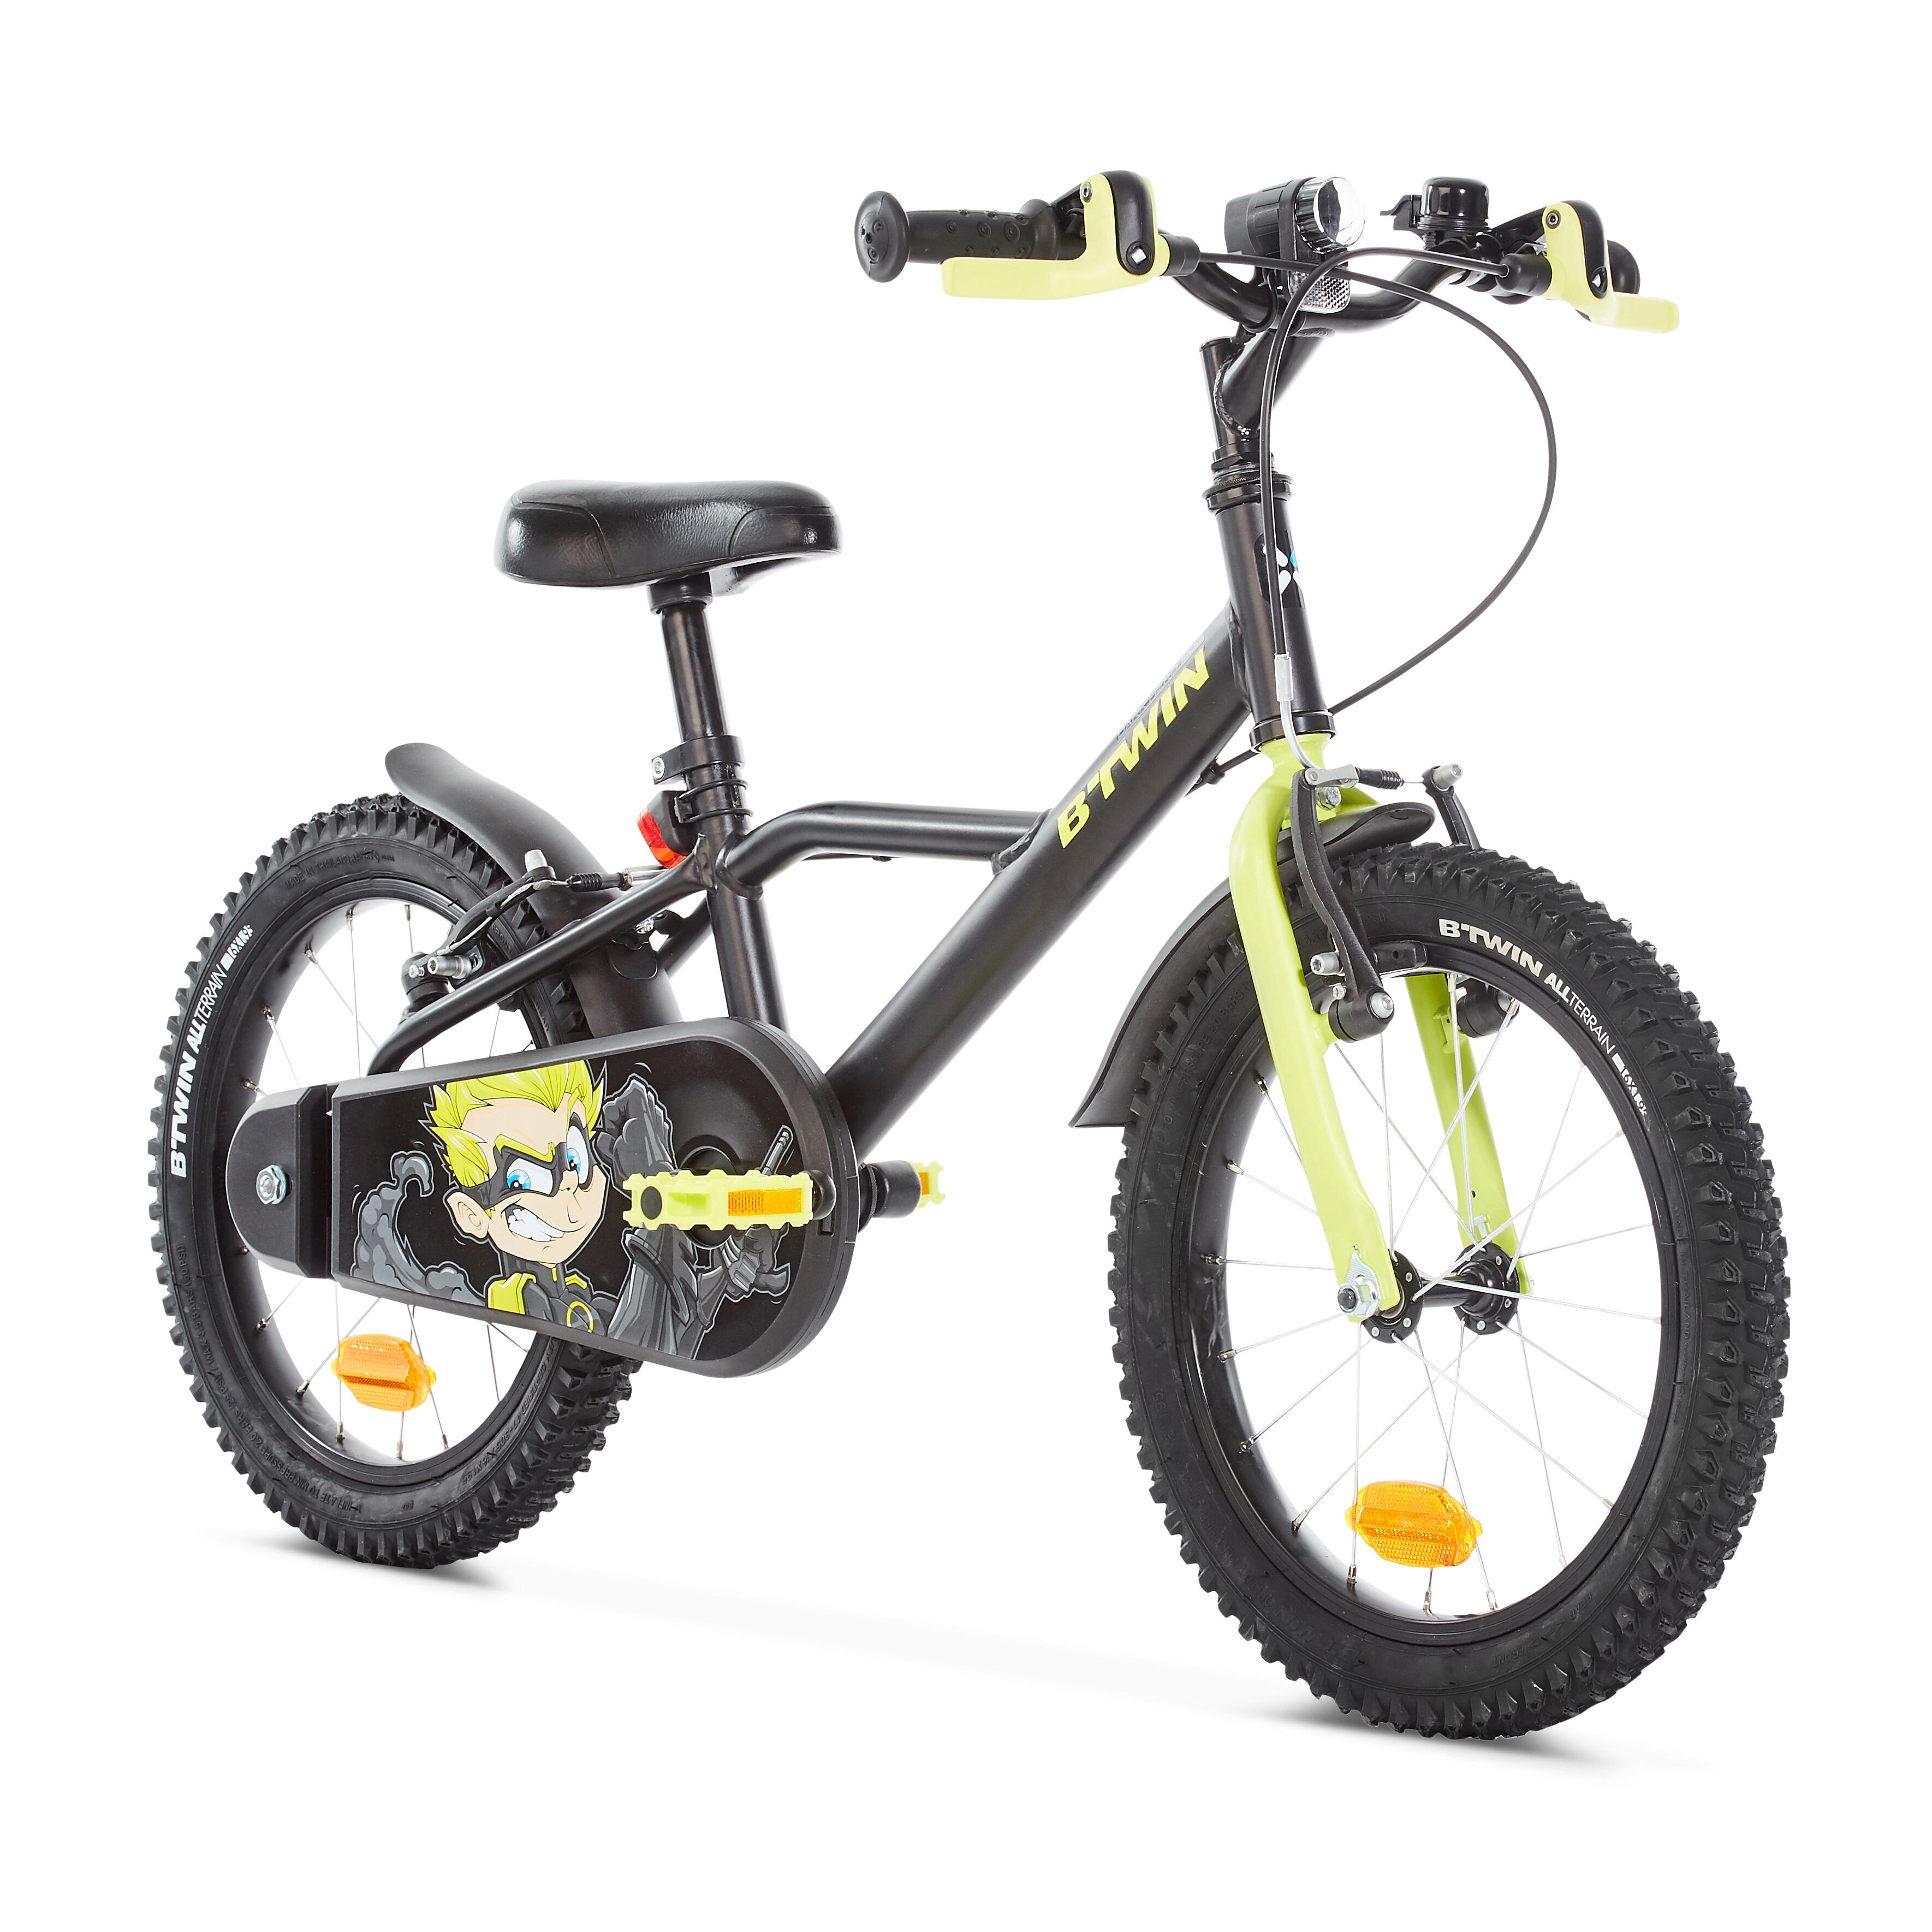 Какой велосипед купить 7 лет. Btwin 16 велосипед детский. Детский велосипед от 4 до 6 лет прогулочный 16" heroboy 500 Btwin. Велосипед детский Декатлон b Twin. Детский велосипед b'Twin heroboy 500 16.